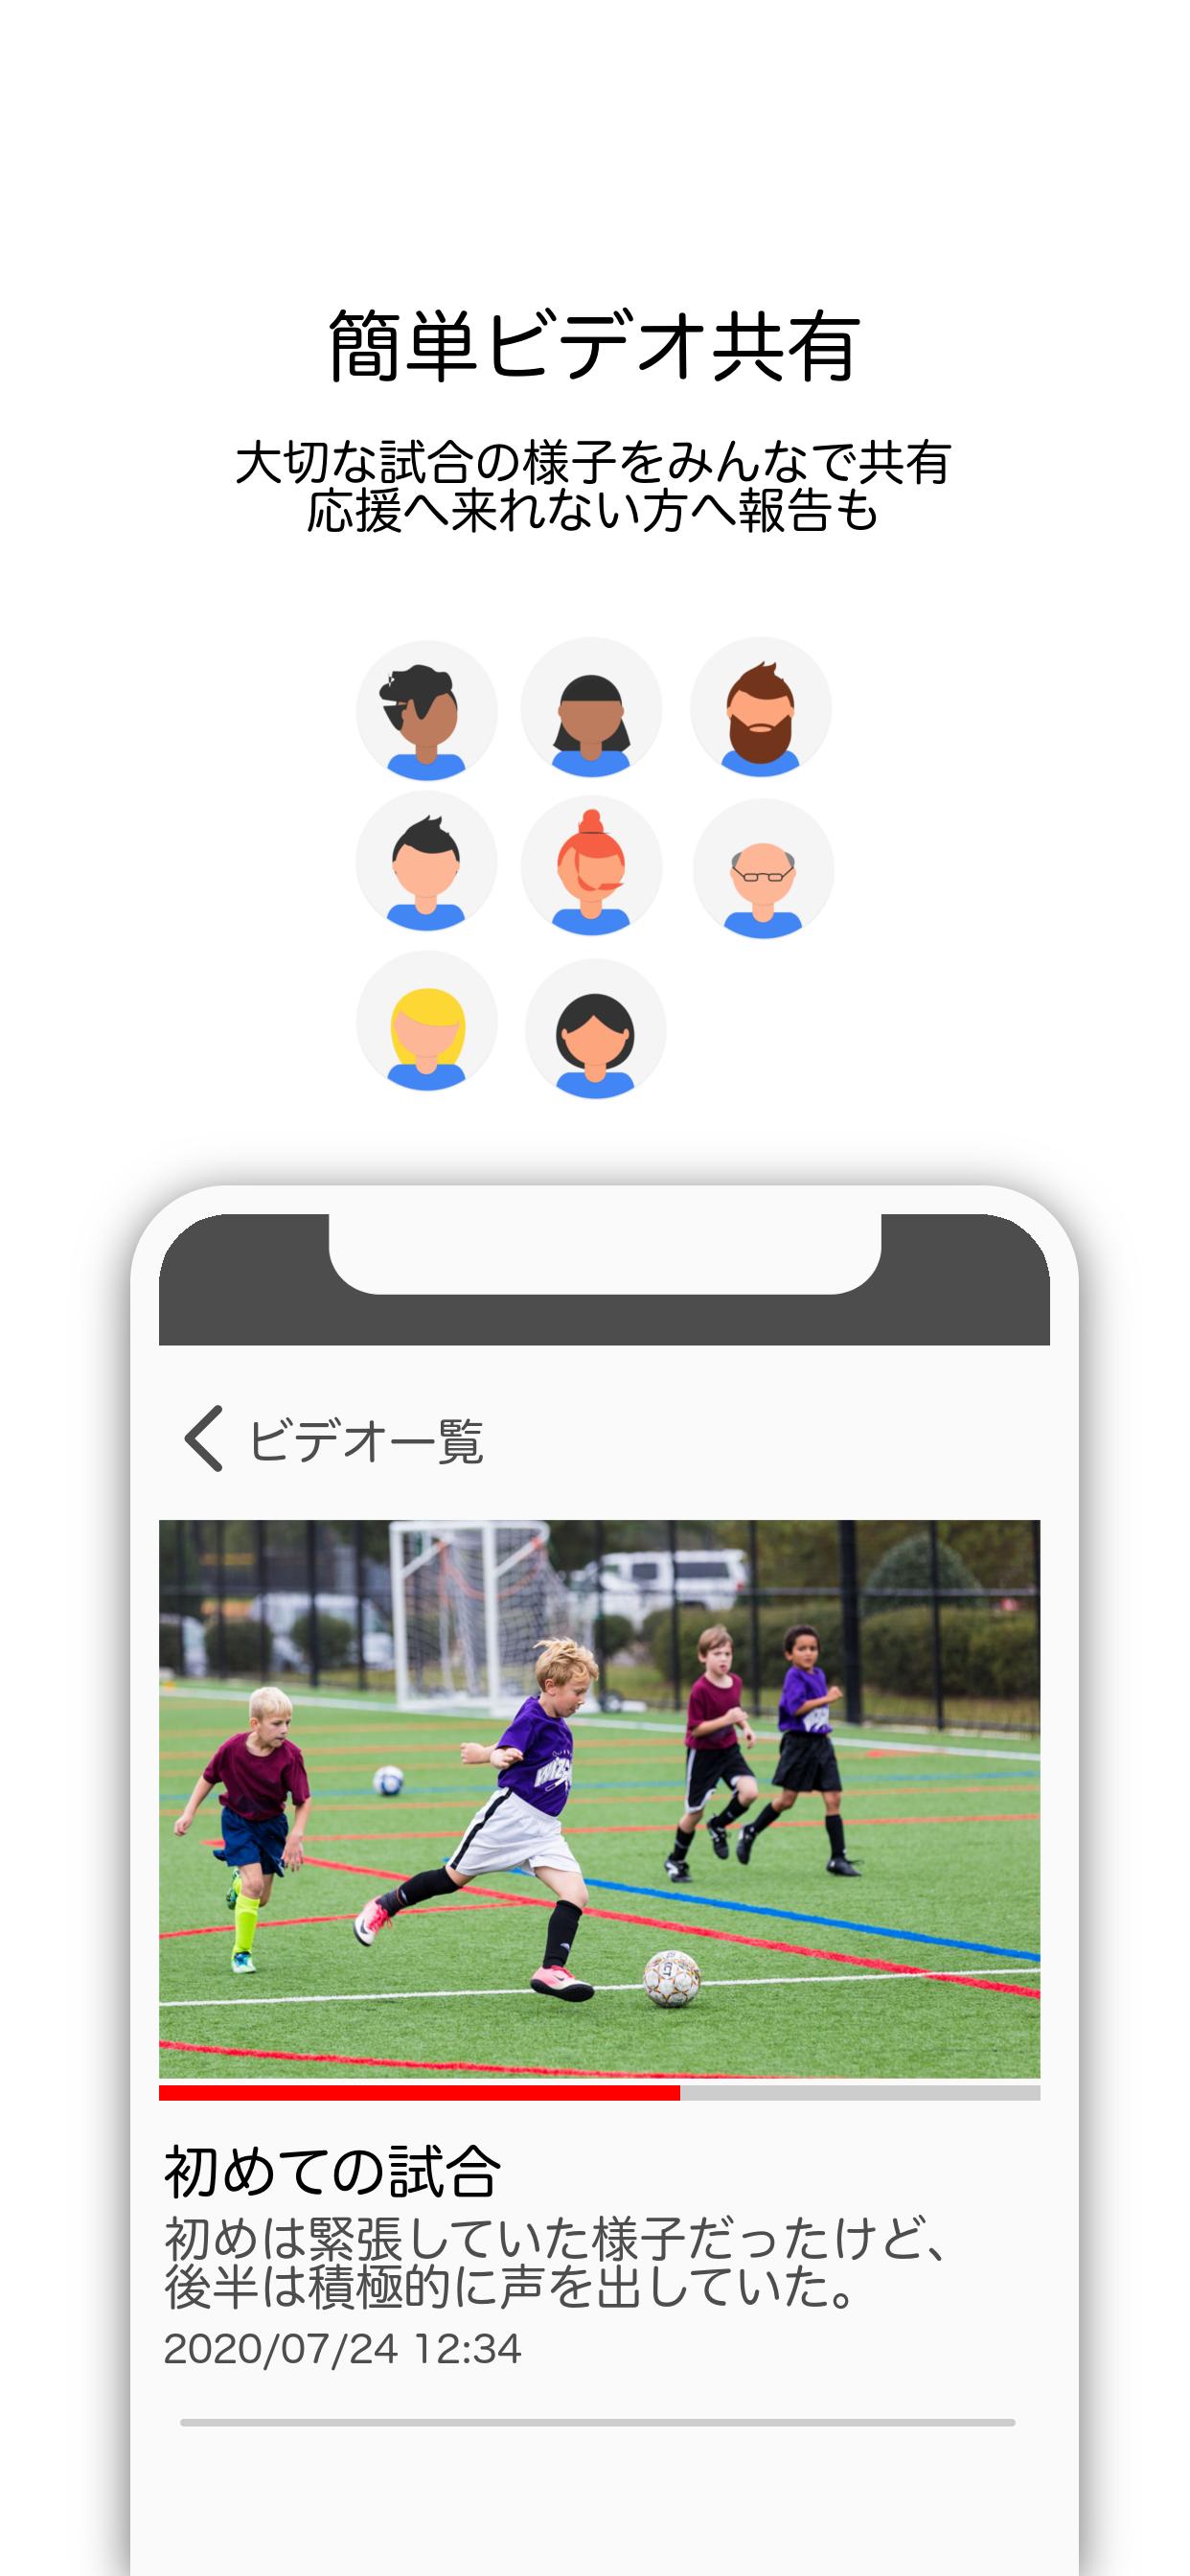 サッカー ラグビー アメリカンフットボール動画共有アプリ Reps レップス For Android Apk Download